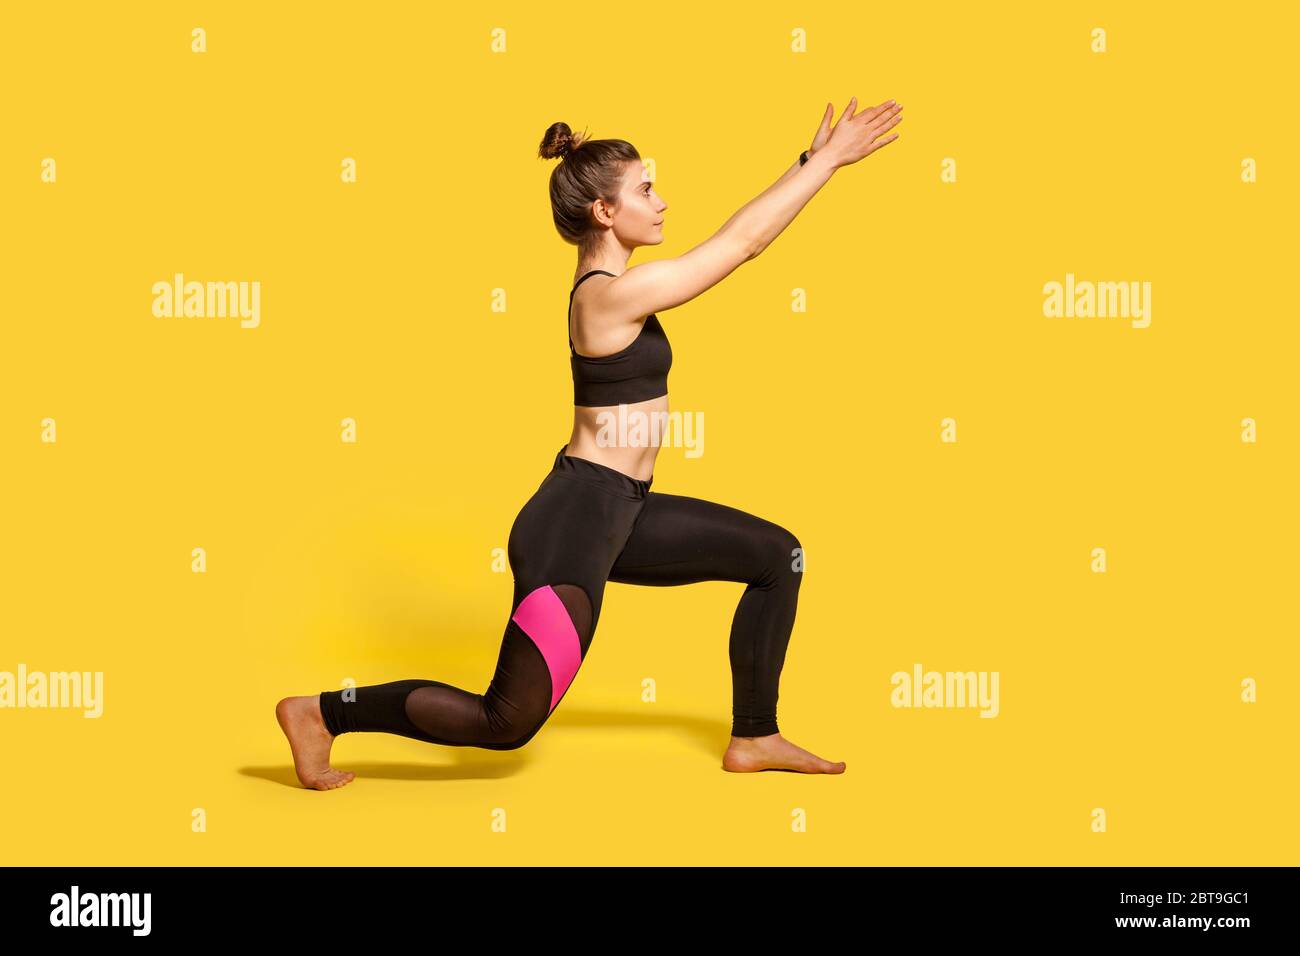 Mujer delgada joven en forma en pantalones deportivos se calienta antes de  hacer ejercicio al aire libre. espacio para texto